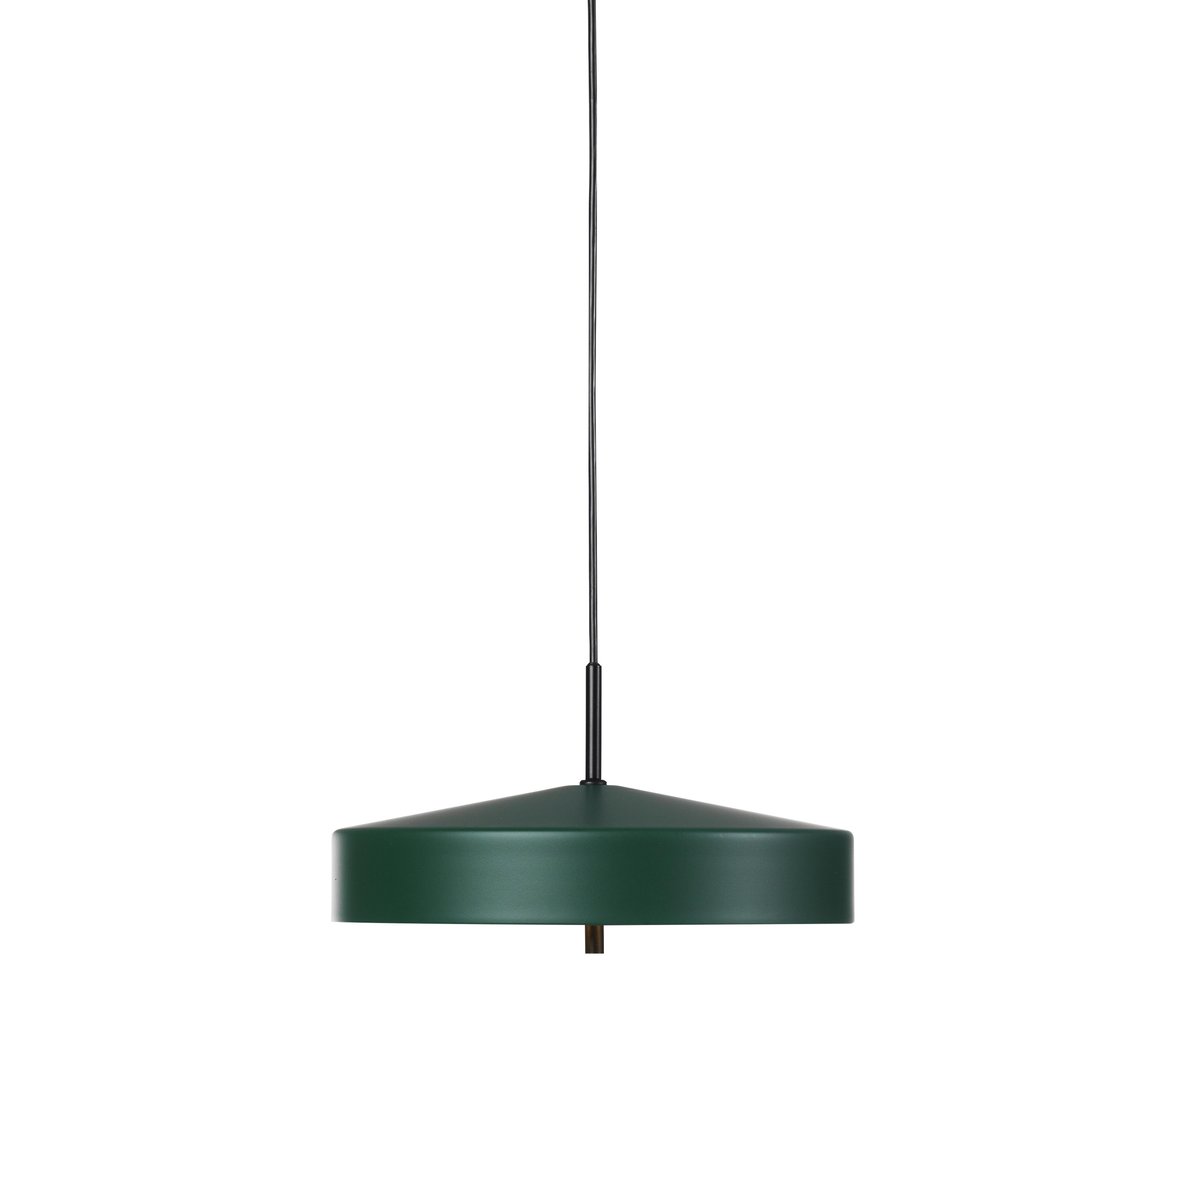 Bsweden Cymbal hanglamp groen - 32 cm.